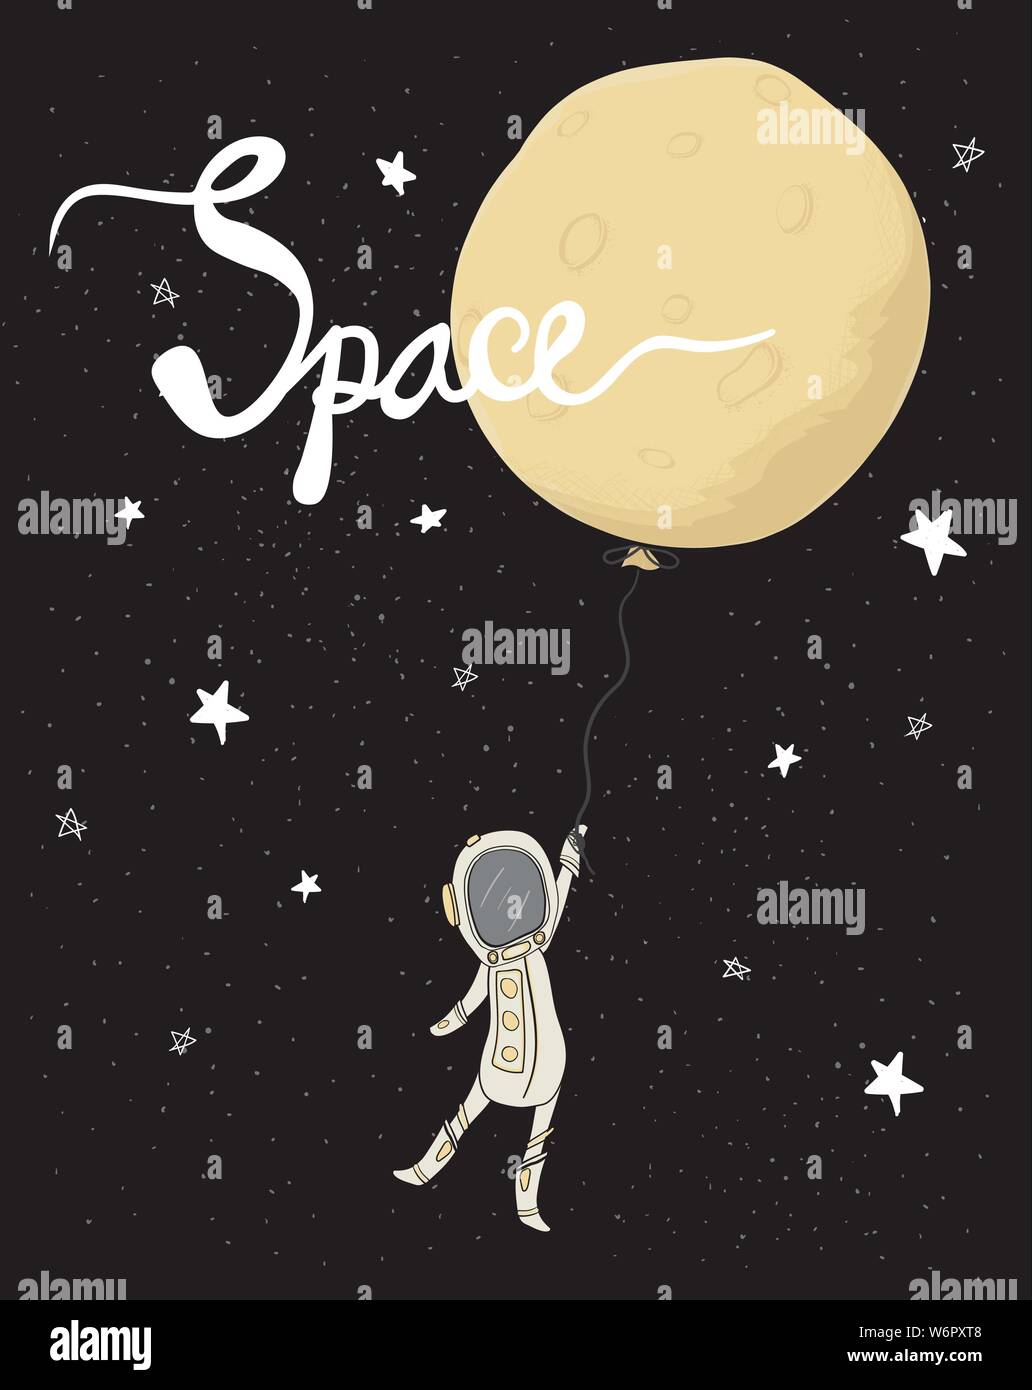 Astronaut Holding der volle Mond Ballon in Galaxy Star space Flachbild Vektor, hand Zeichnung mit Kalligraphie, Idee für Grußkarte, Kid, Kind druckbare Stock Vektor